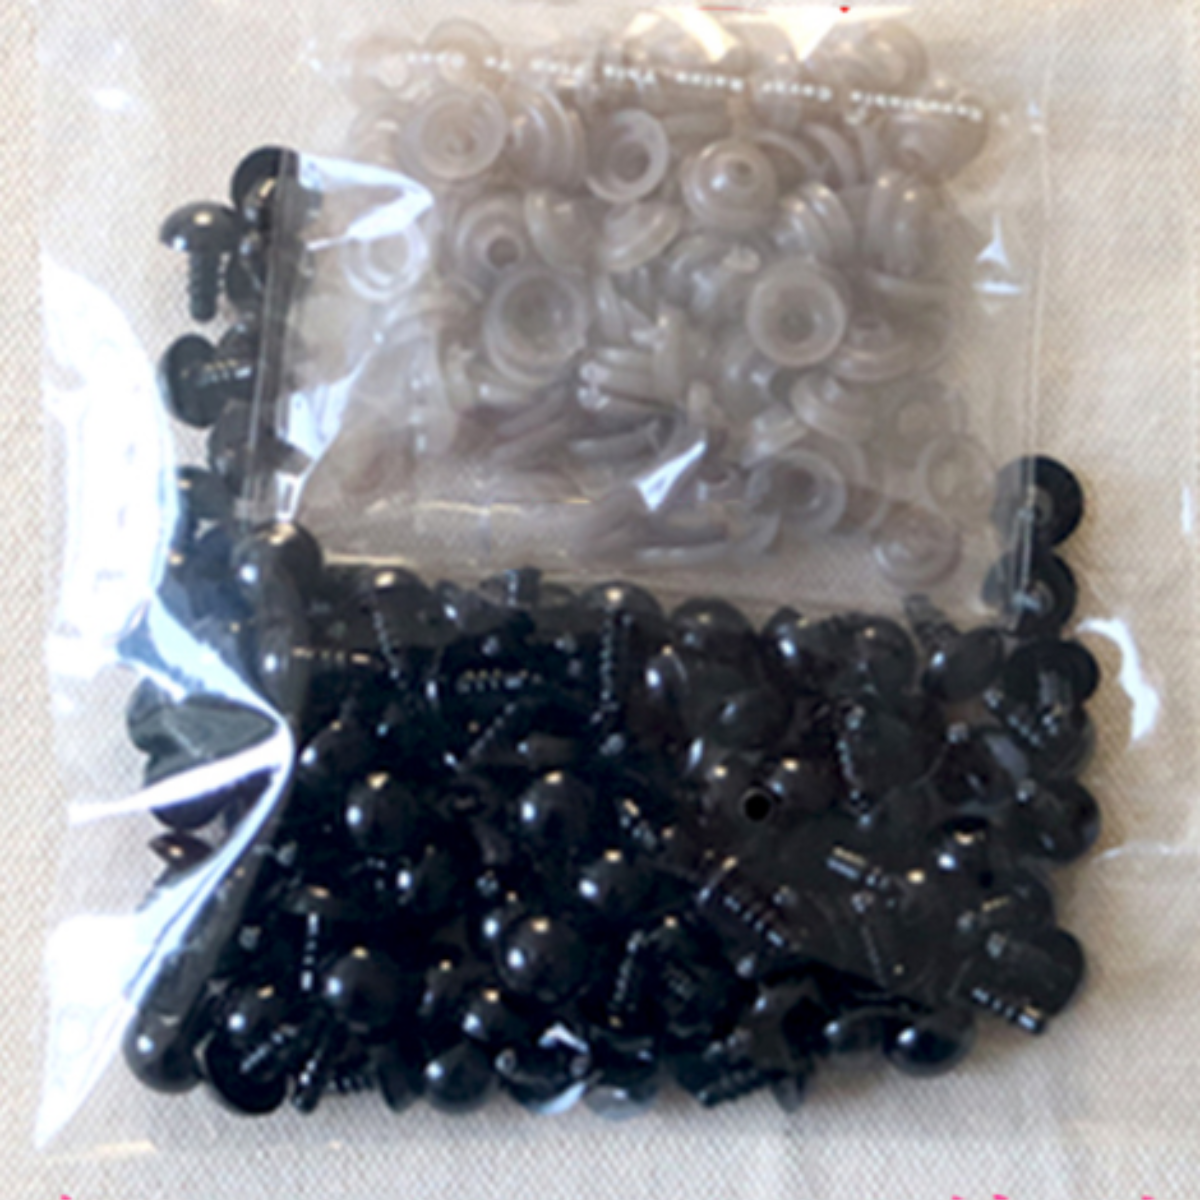 100 piezas de plástico negro ojos de seguridad para amigurumis 6/8